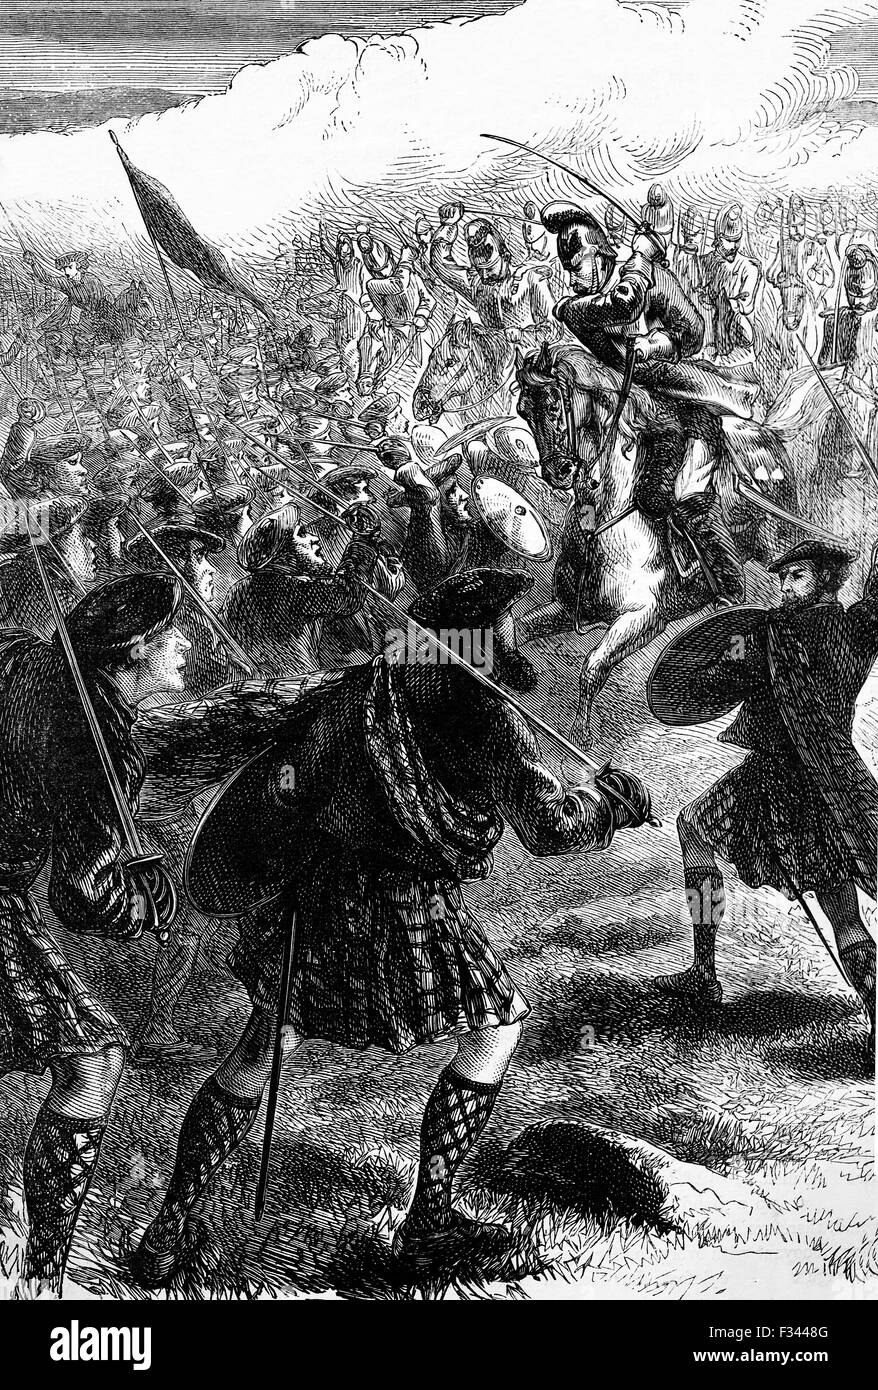 Die Schlacht von Culloden, die finale Konfrontation von 1745 Jacobite steigen. Am 16. April 1746 kämpften die Jacobite Kräfte von Charles Edward Stuart loyalistischen Truppen unter dem Kommando von der Herzog von Cumberland in der Nähe von Inverness in den schottischen Highlands. Die Loyalisten Sieg bei Culloden gestoppt entscheidend die jakobitische Absicht, das Haus Hannover zu stürzen und das Haus Stuart auf den britischen Thron wiederherstellen Stockfoto